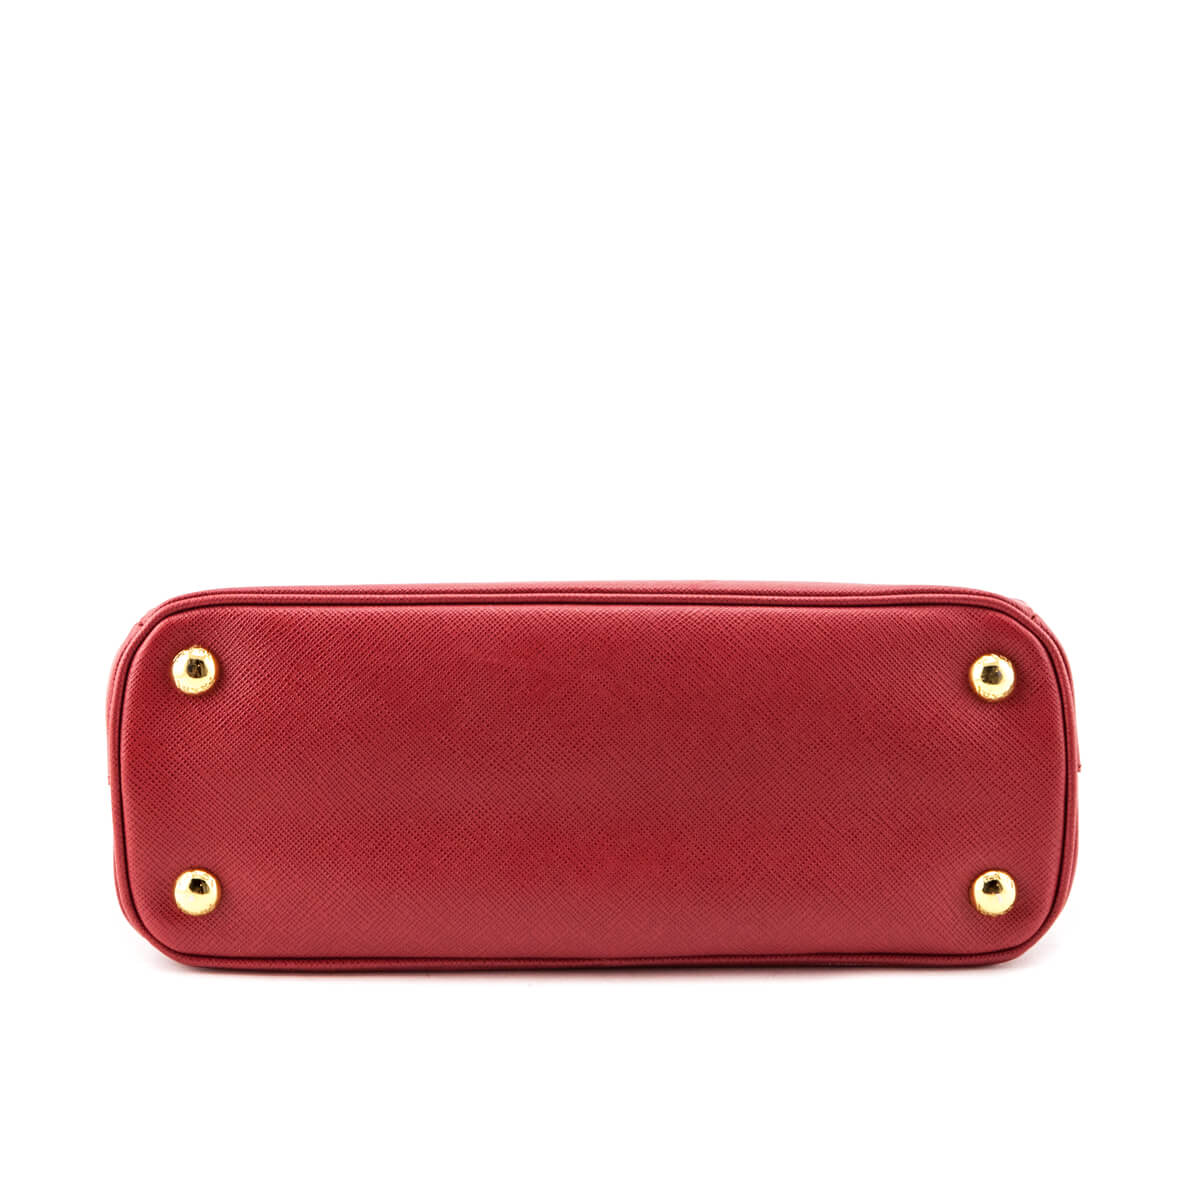 Prada Fuoco Saffiano Lux Mini Galleria Double Zip Tote - Love that Bag etc - Preowned Authentic Designer Handbags & Preloved Fashions